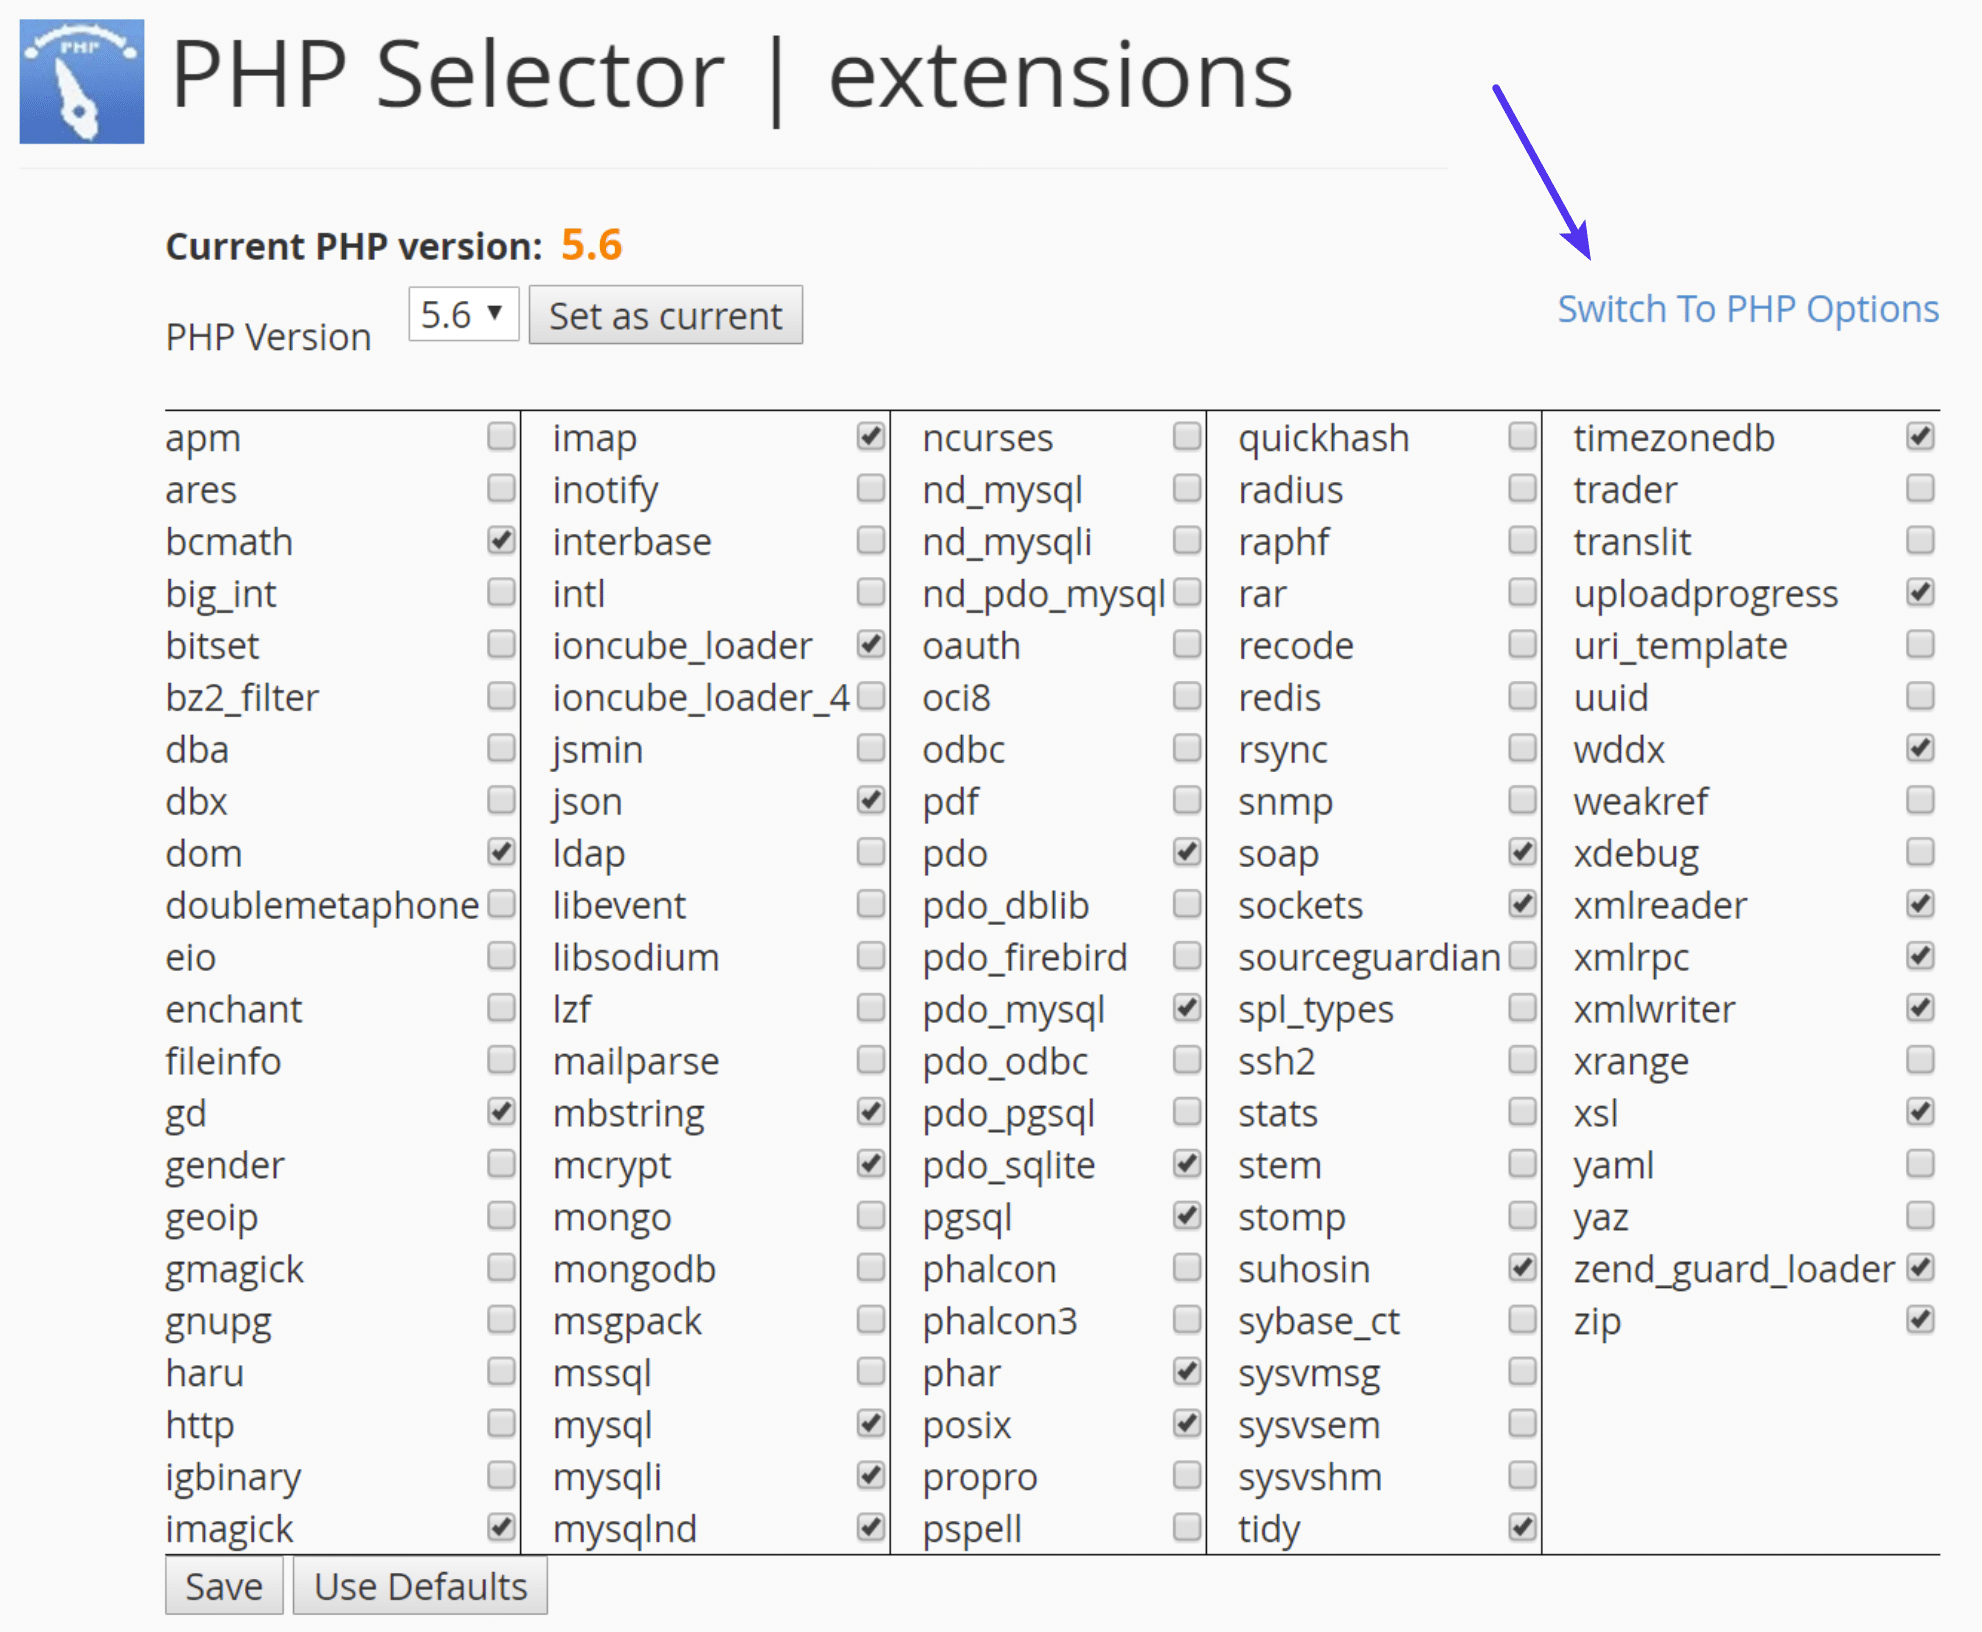 Wechsle zu PHP Optionen